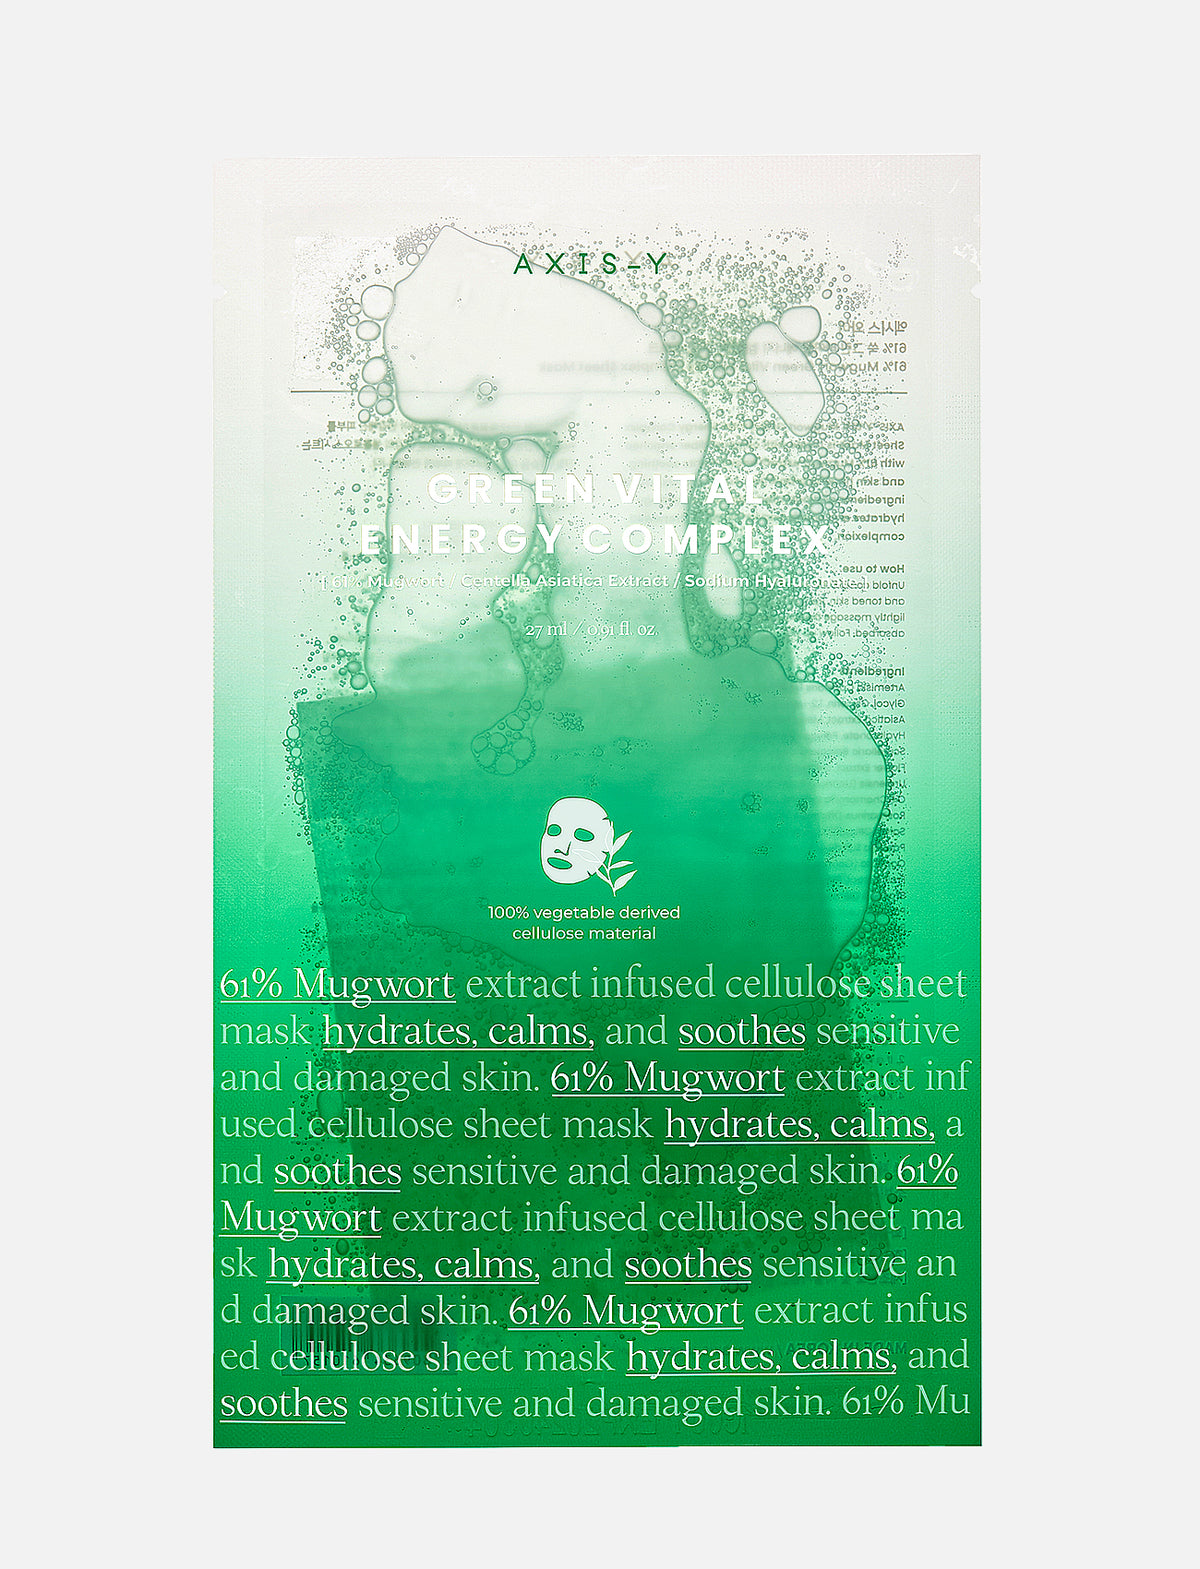 Die AXIS-Y 61% Mugwort Green Vital Energy Complex Sheet Mask vor hellgrauem Hintergrund.